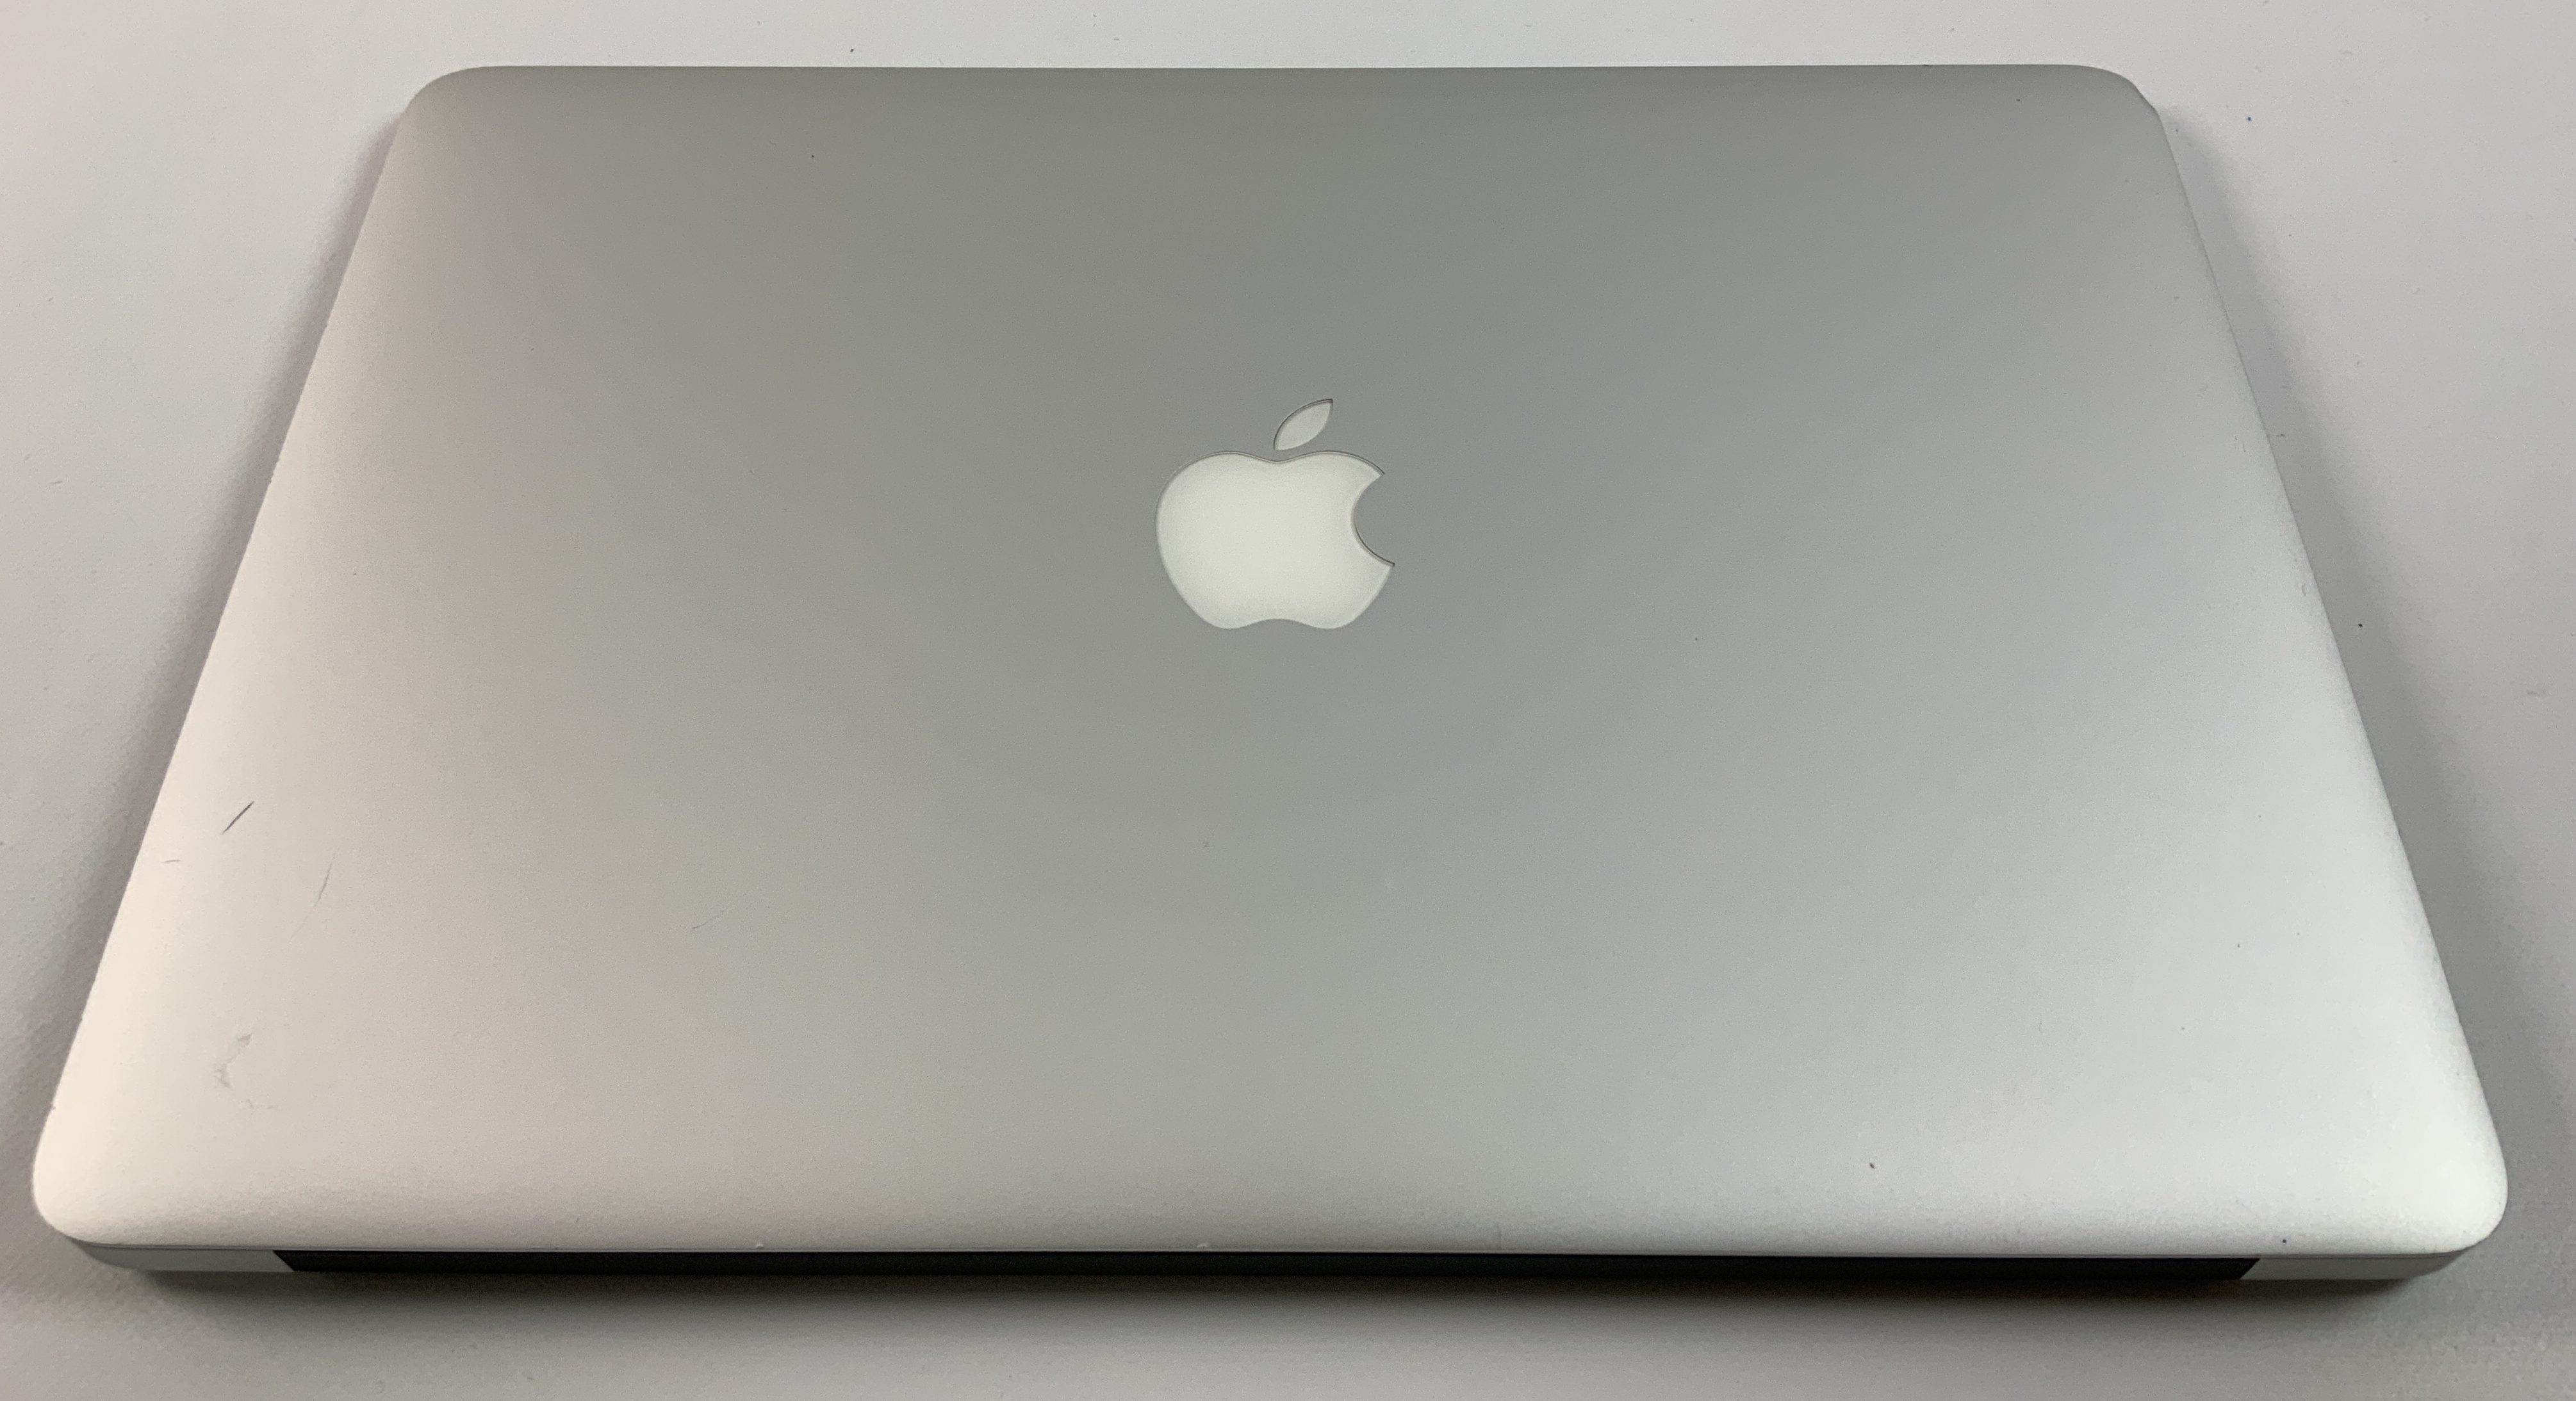 MacBook Air 13" Mid 2017 (Intel Core i5 1.8 GHz 8 GB RAM 256 GB SSD), Intel Core i5 1.8 GHz, 8 GB RAM, 256 GB SSD, Afbeelding 2